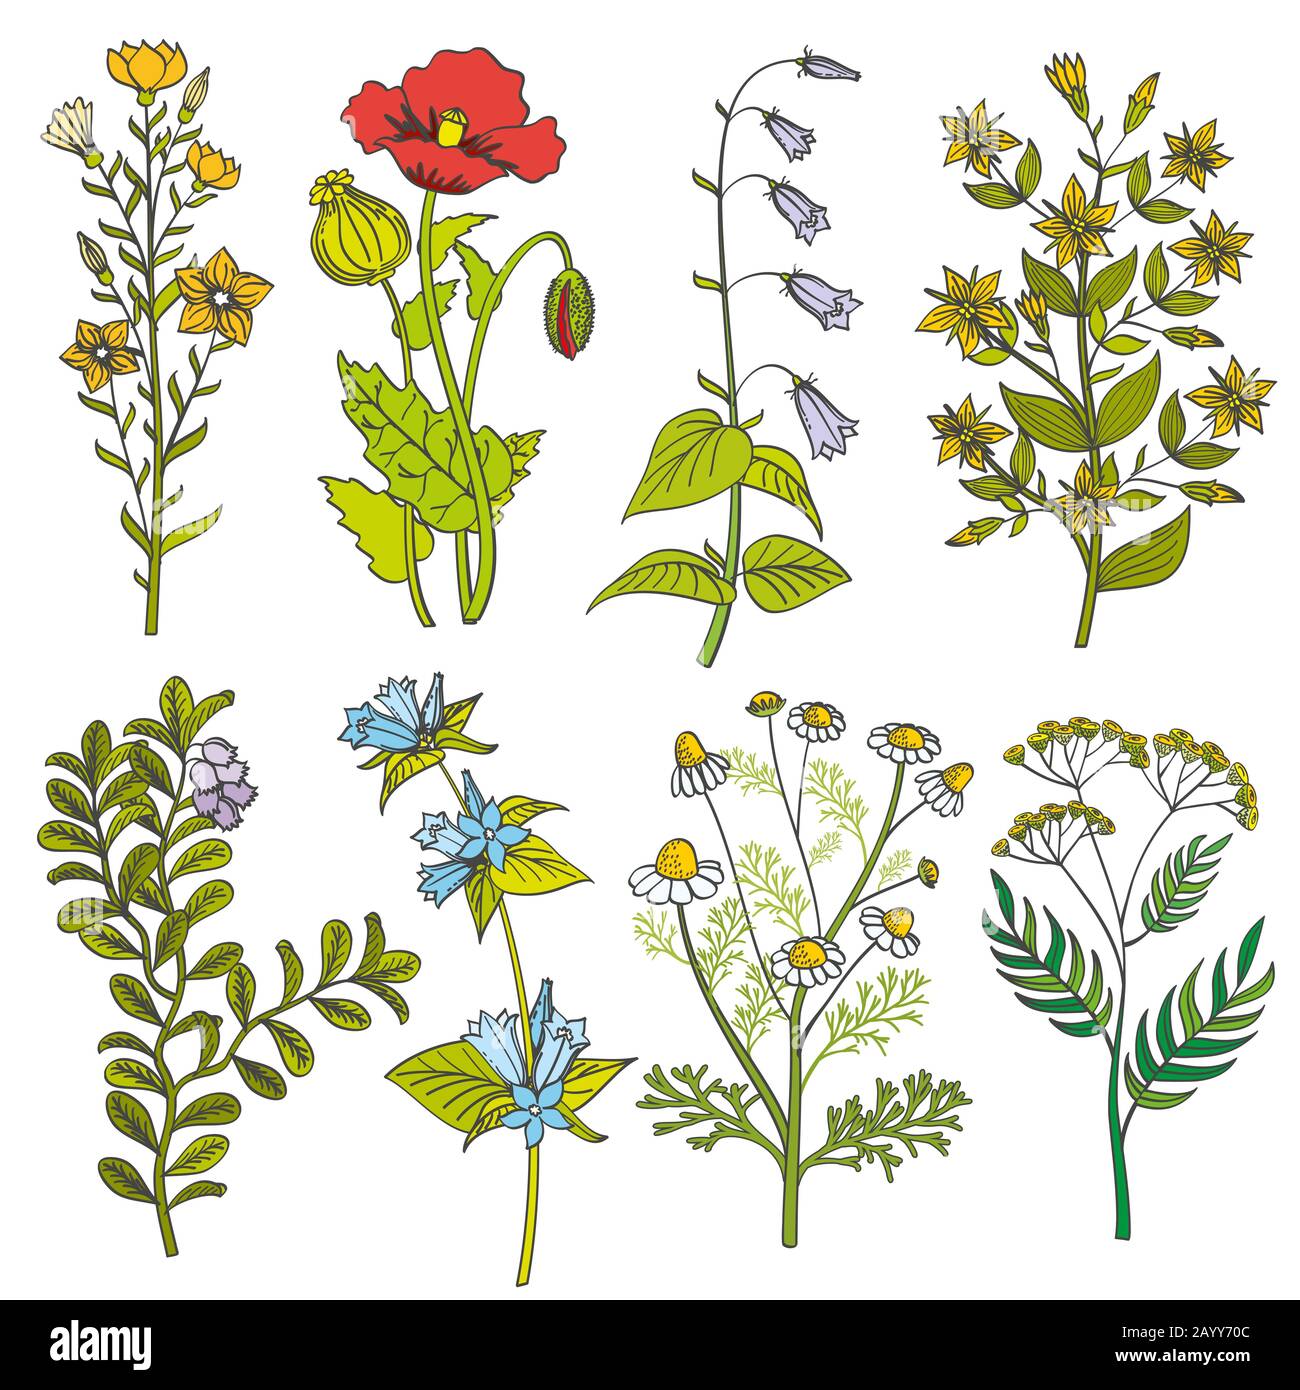 Herbes et fleurs sauvages illustration de couleurs vectorielles vintage. Ensemble de fleurs d'été et fleur colorée de printemps avec feuille Illustration de Vecteur